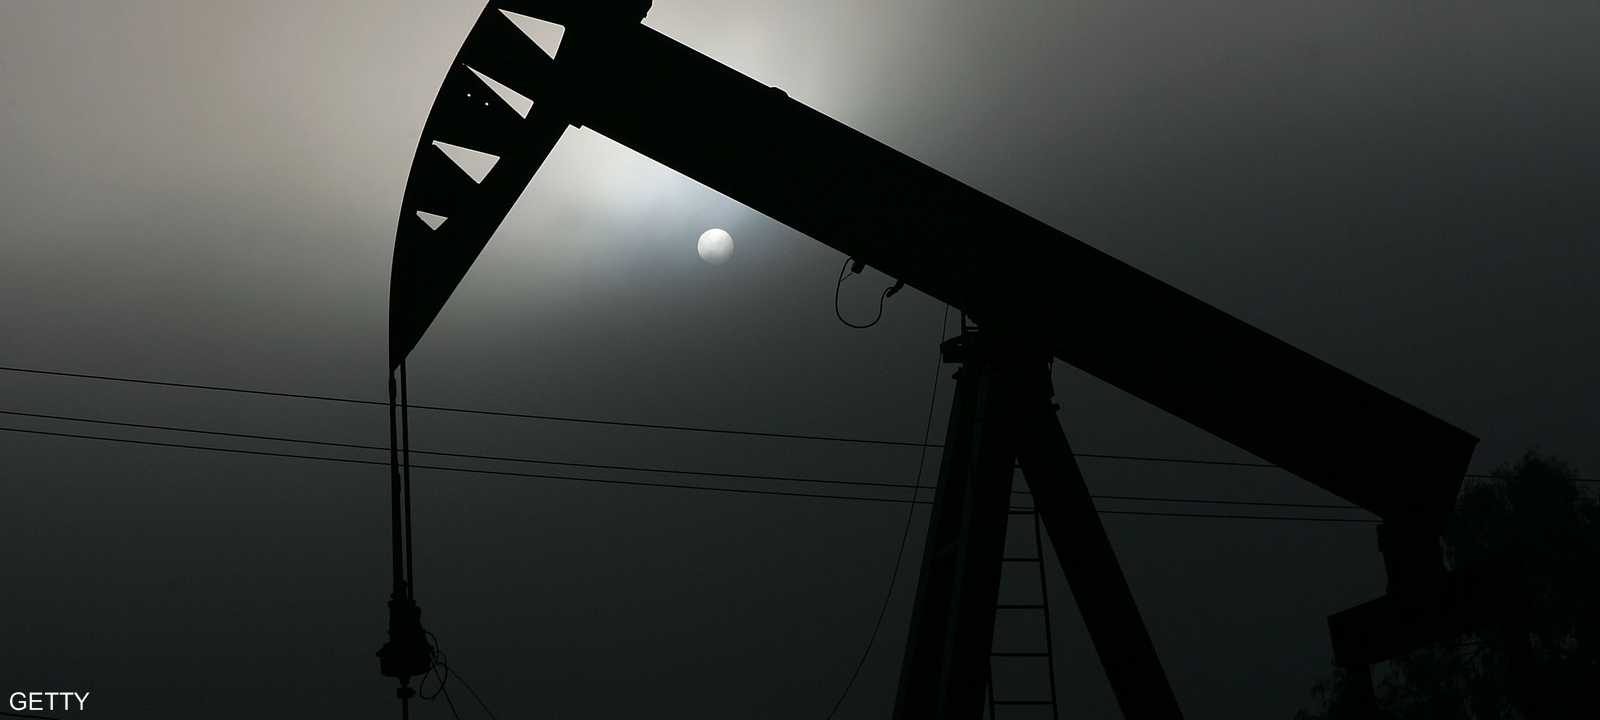 النفط يتراجع مع زيادة المخاوف من نشوب حرب تجارية (أرشيف)